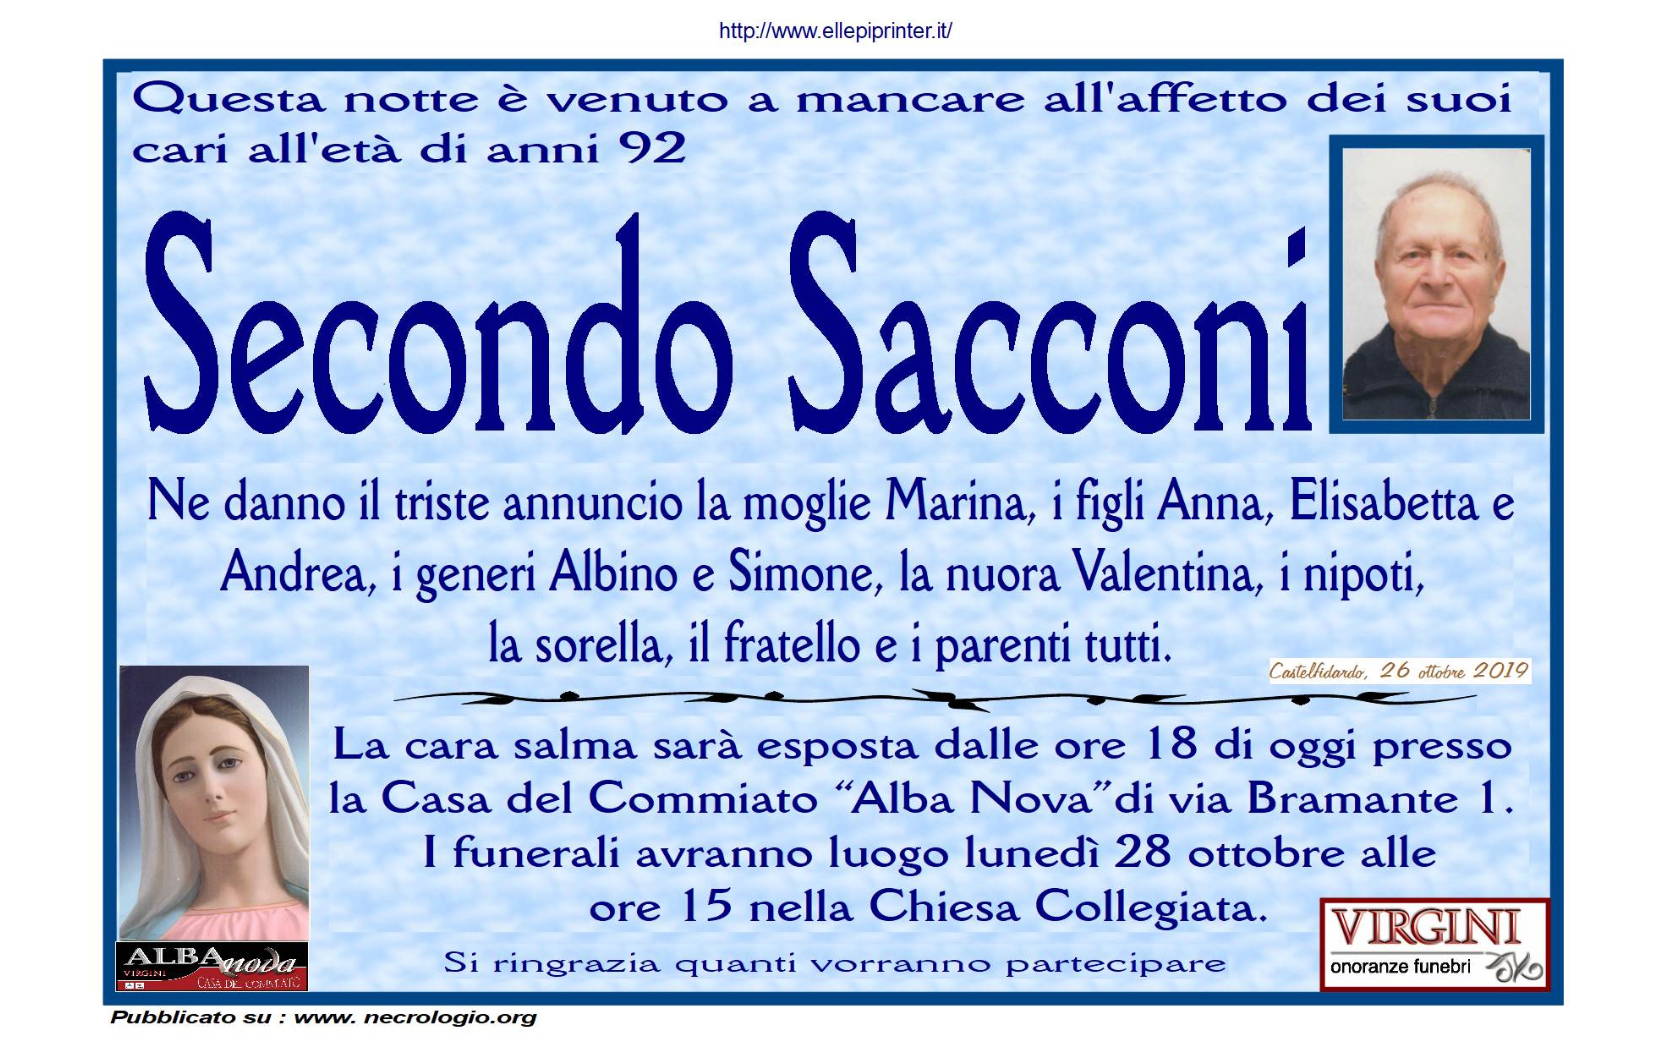 Secondo Sacconi